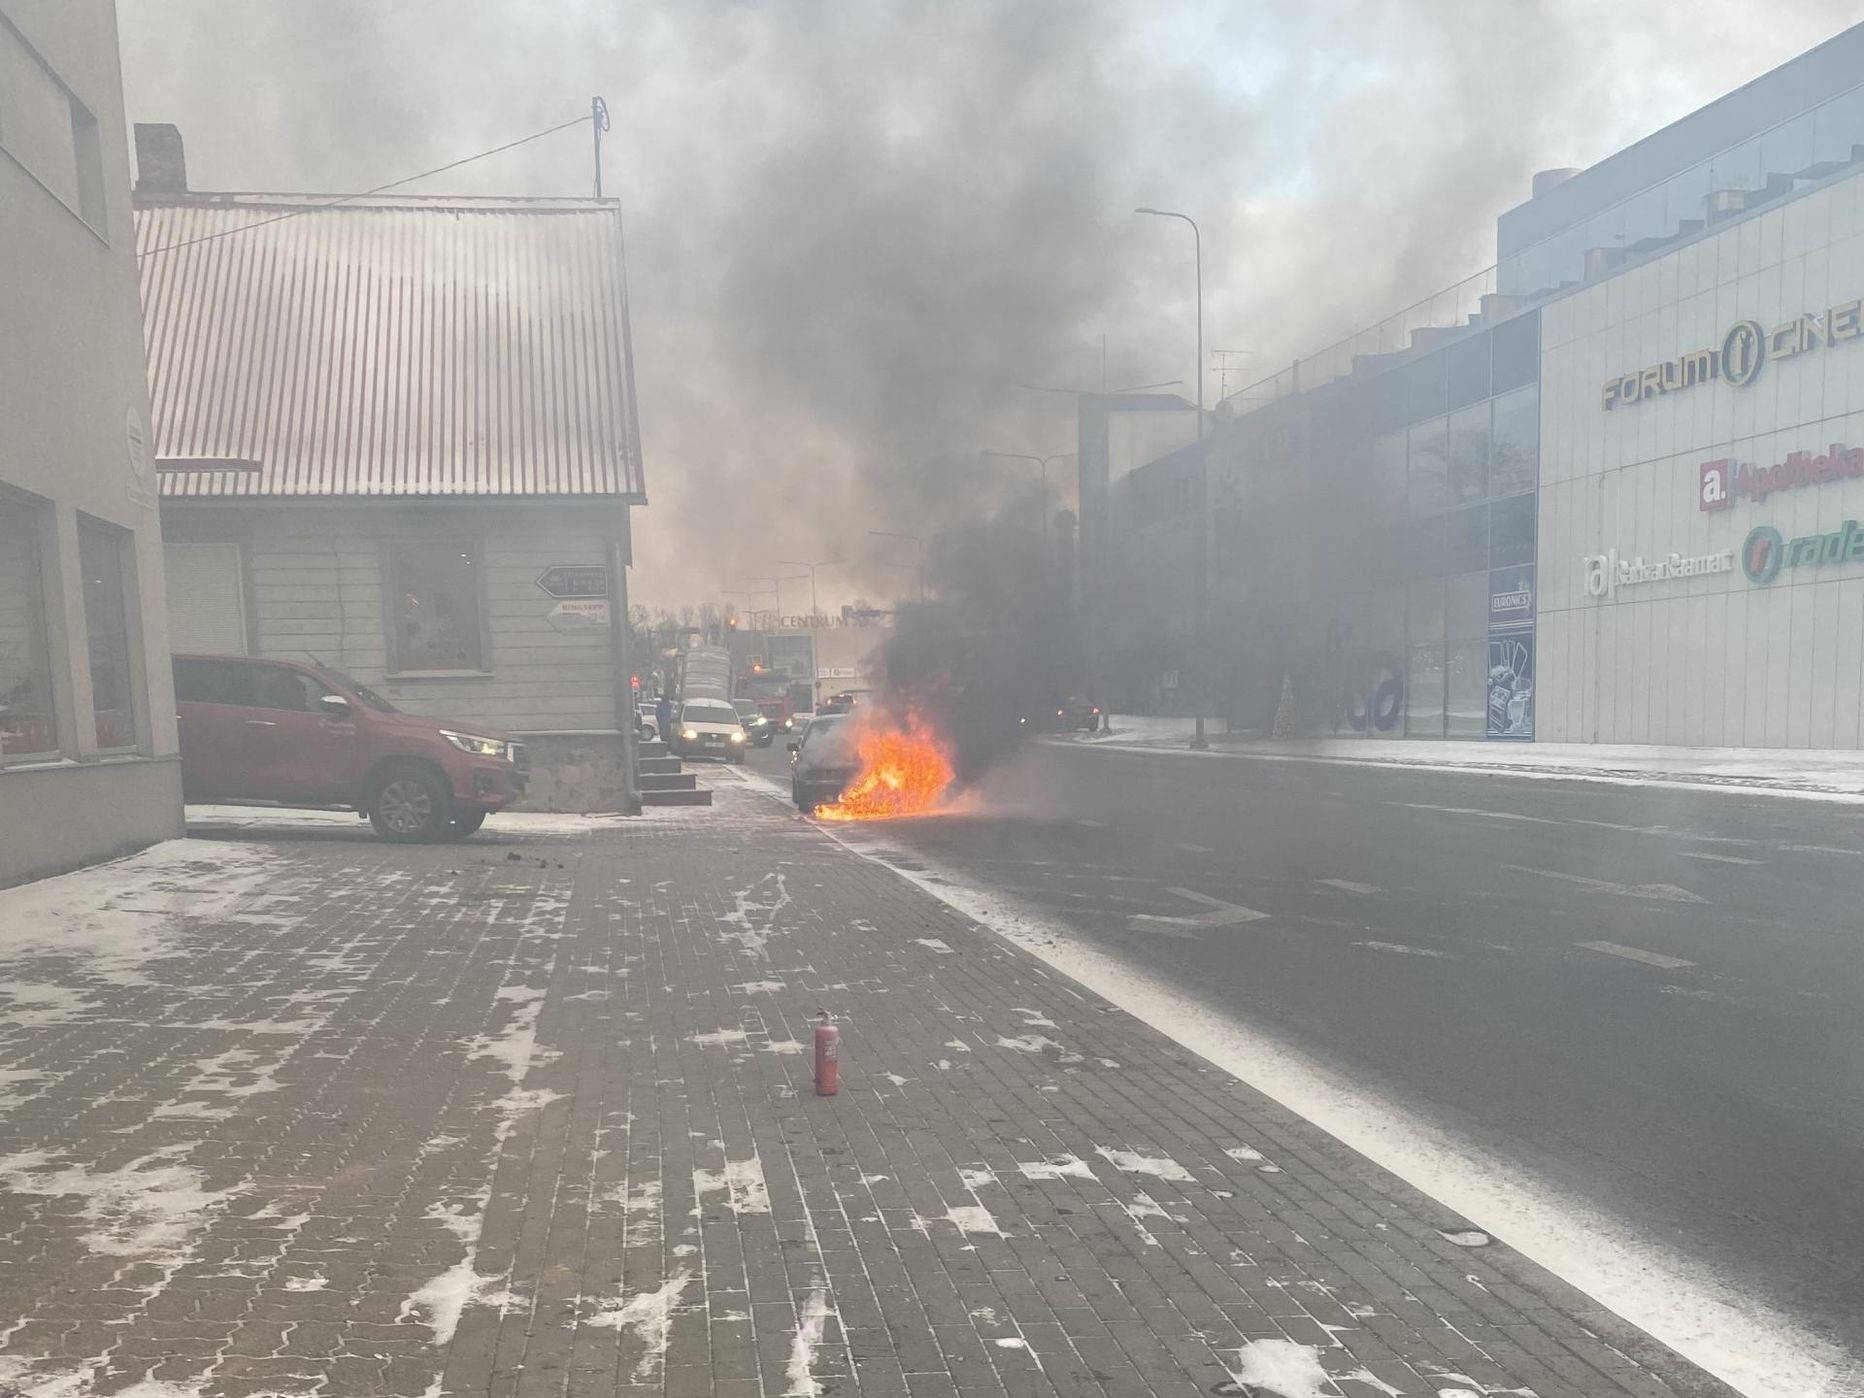 Sõiduauto BMW põles Viljandi kesklinnas lahtise leegiga.